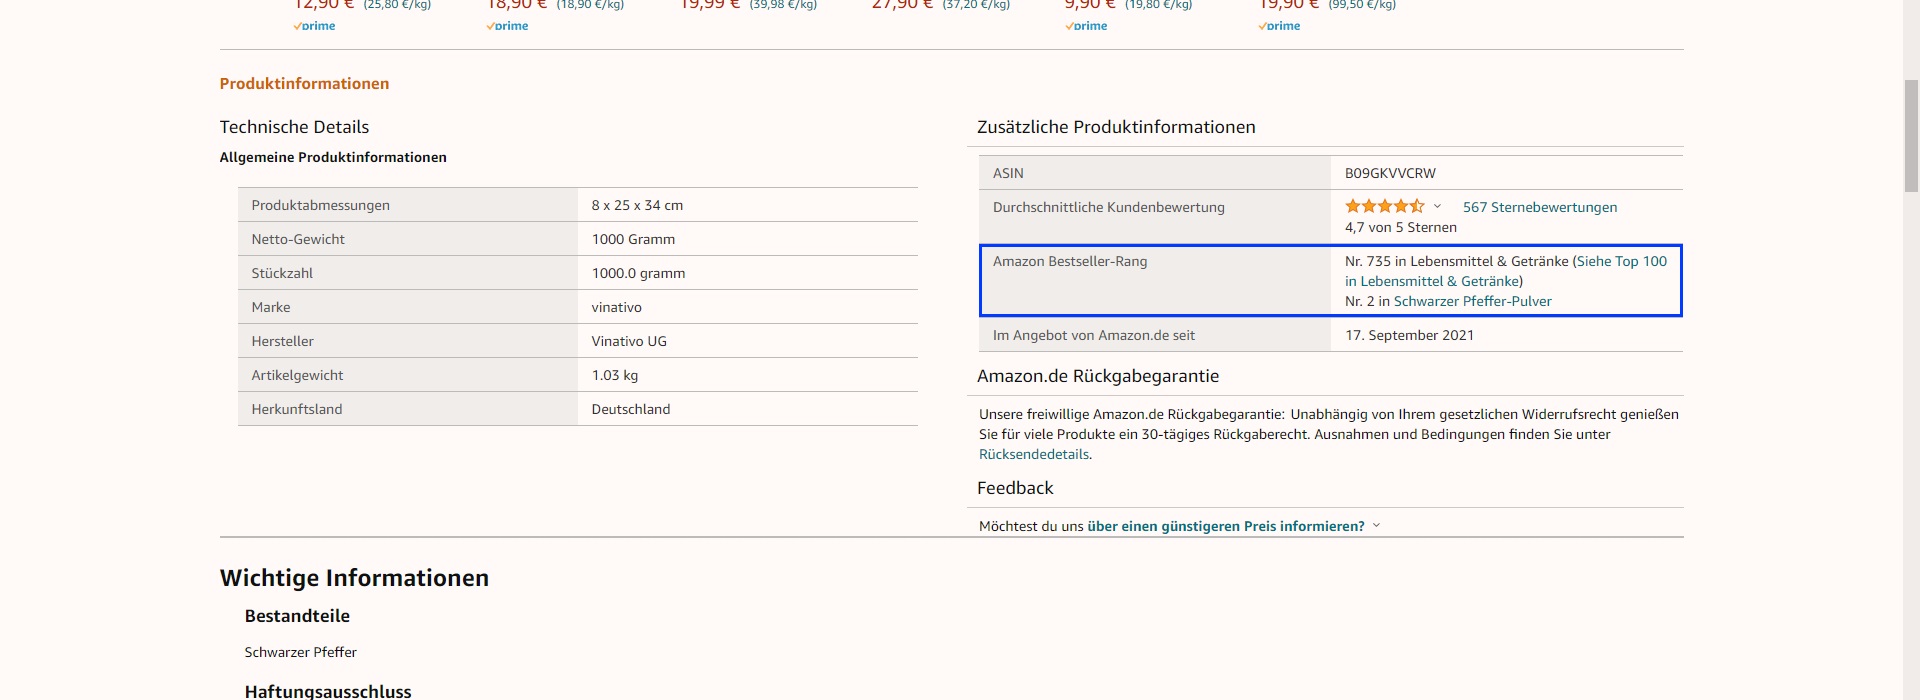 Der Screenshot zeigt an welcher Stelle im Listing man den Amazon BSR einsehen kann.